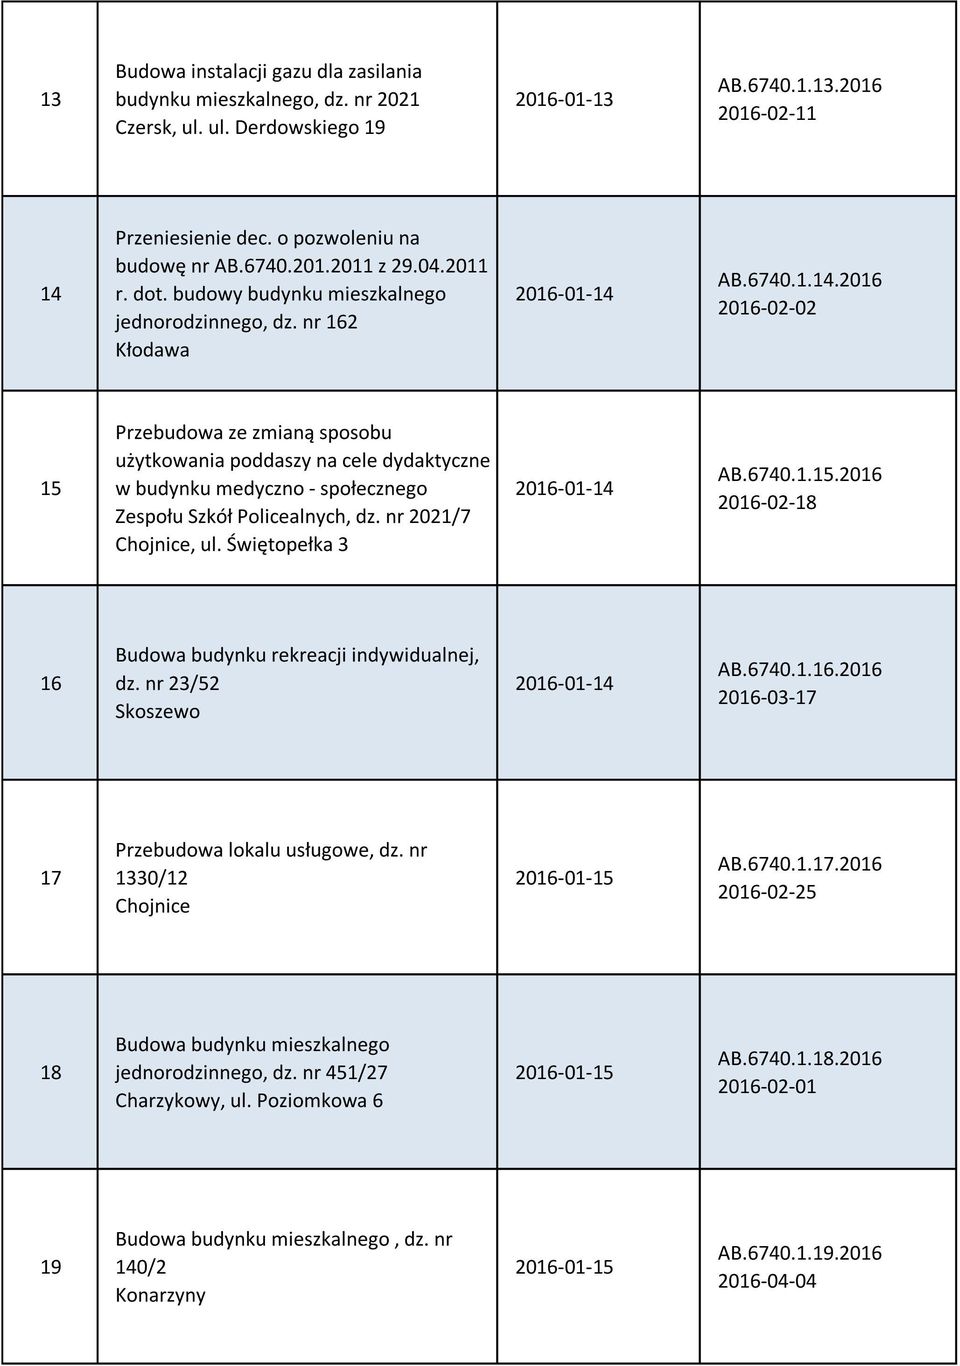 AB.6740.1.14.2016 2016-02-02 15 Przebudowa ze zmianą sposobu użytkowania poddaszy na cele dydaktyczne w budynku medyczno - społecznego Zespołu Szkół Policealnych, dz. nr 2021/7 Chojnice, ul.